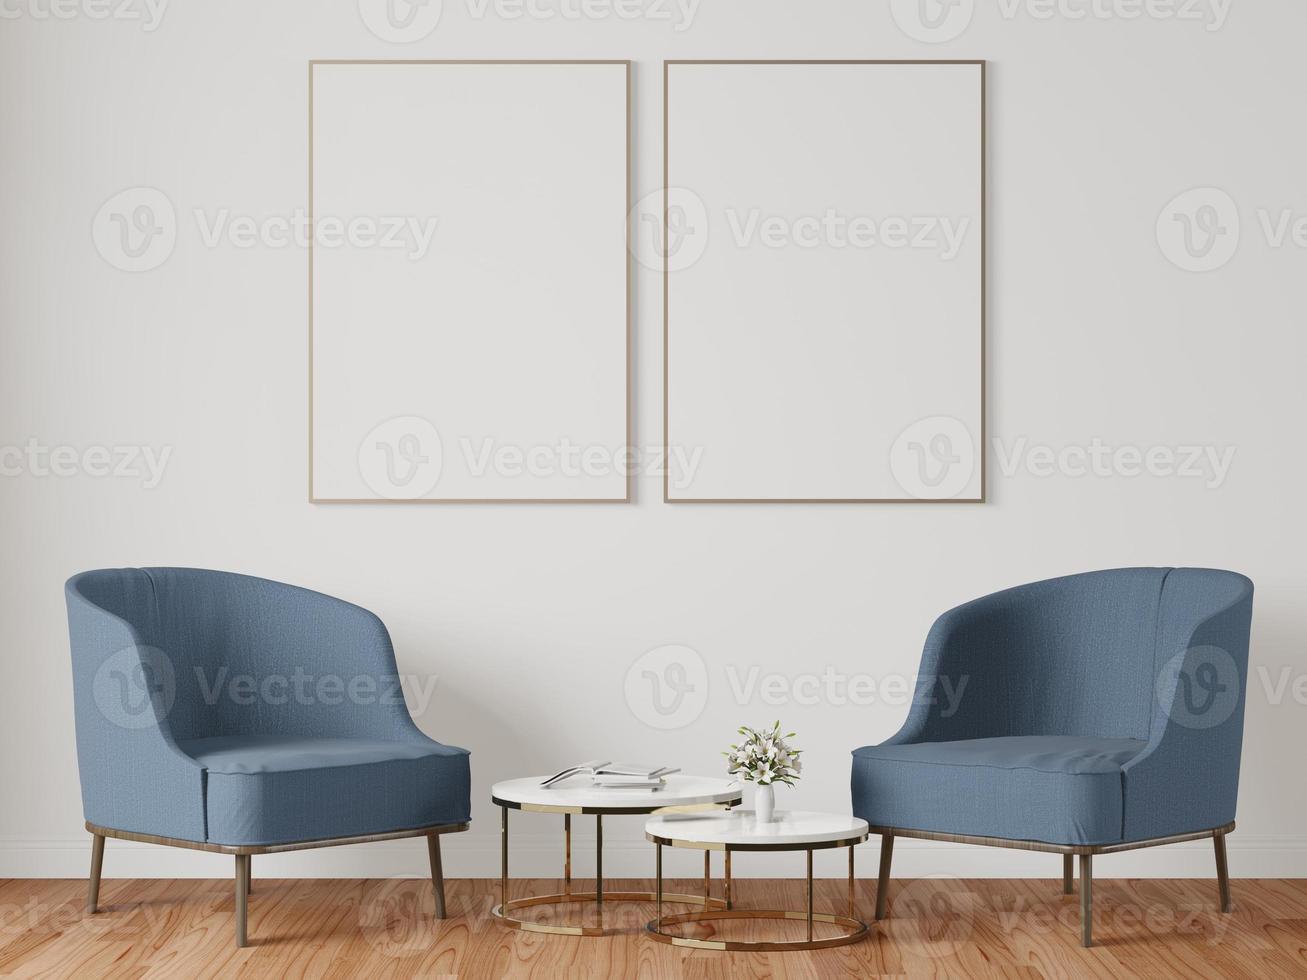 un ensemble de tables et de chaises dans la pièce avec un cadre photo fixé au mur.